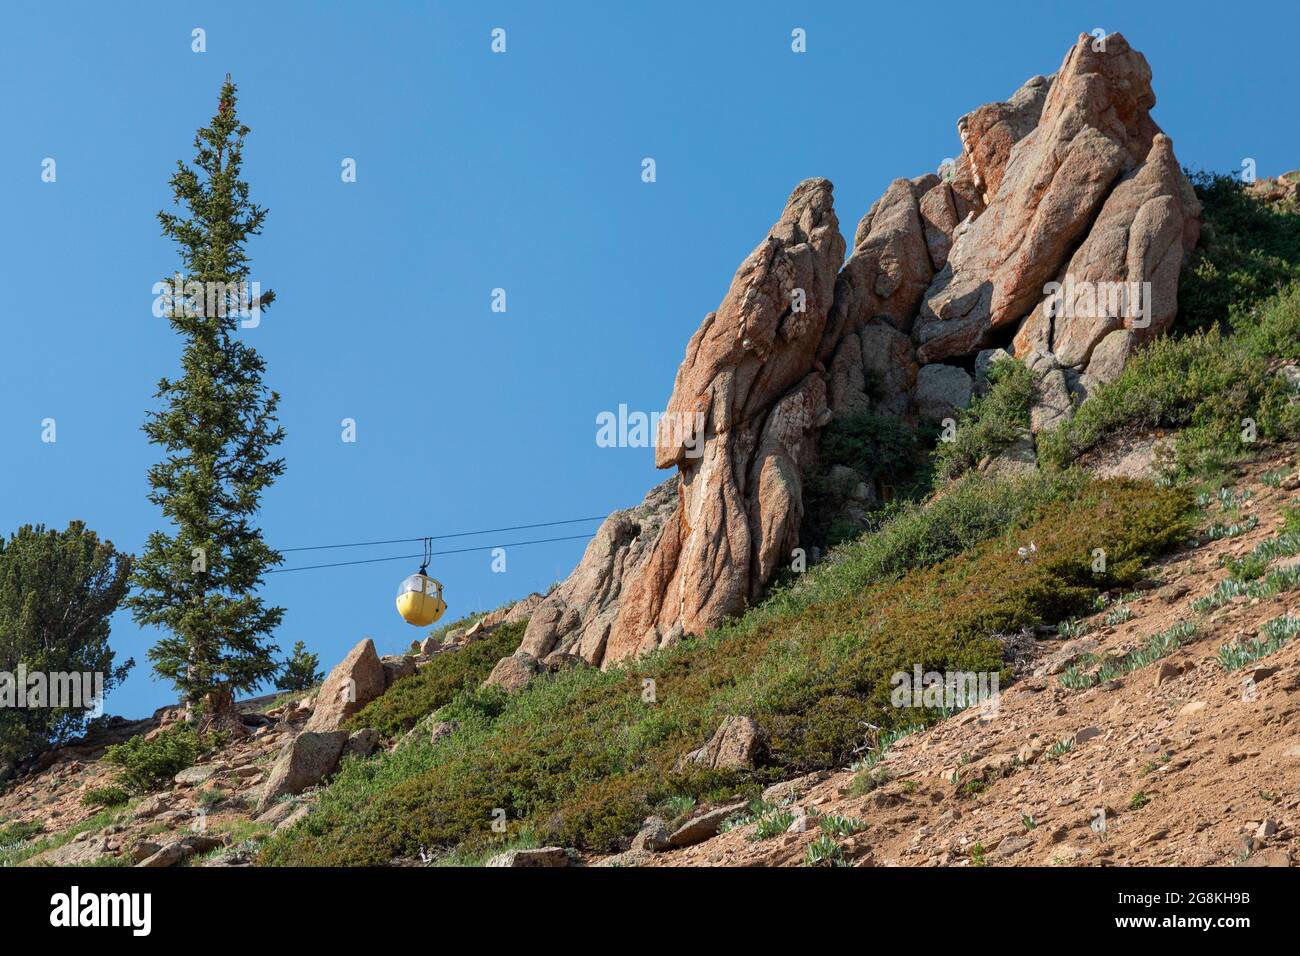 Monarch, Colorado - le tramway panoramique Monarch Crest emmène les touristes jusqu'au sommet de 12,000 mètres de Monarch Ridge, à la ligne de partage continentale. Banque D'Images